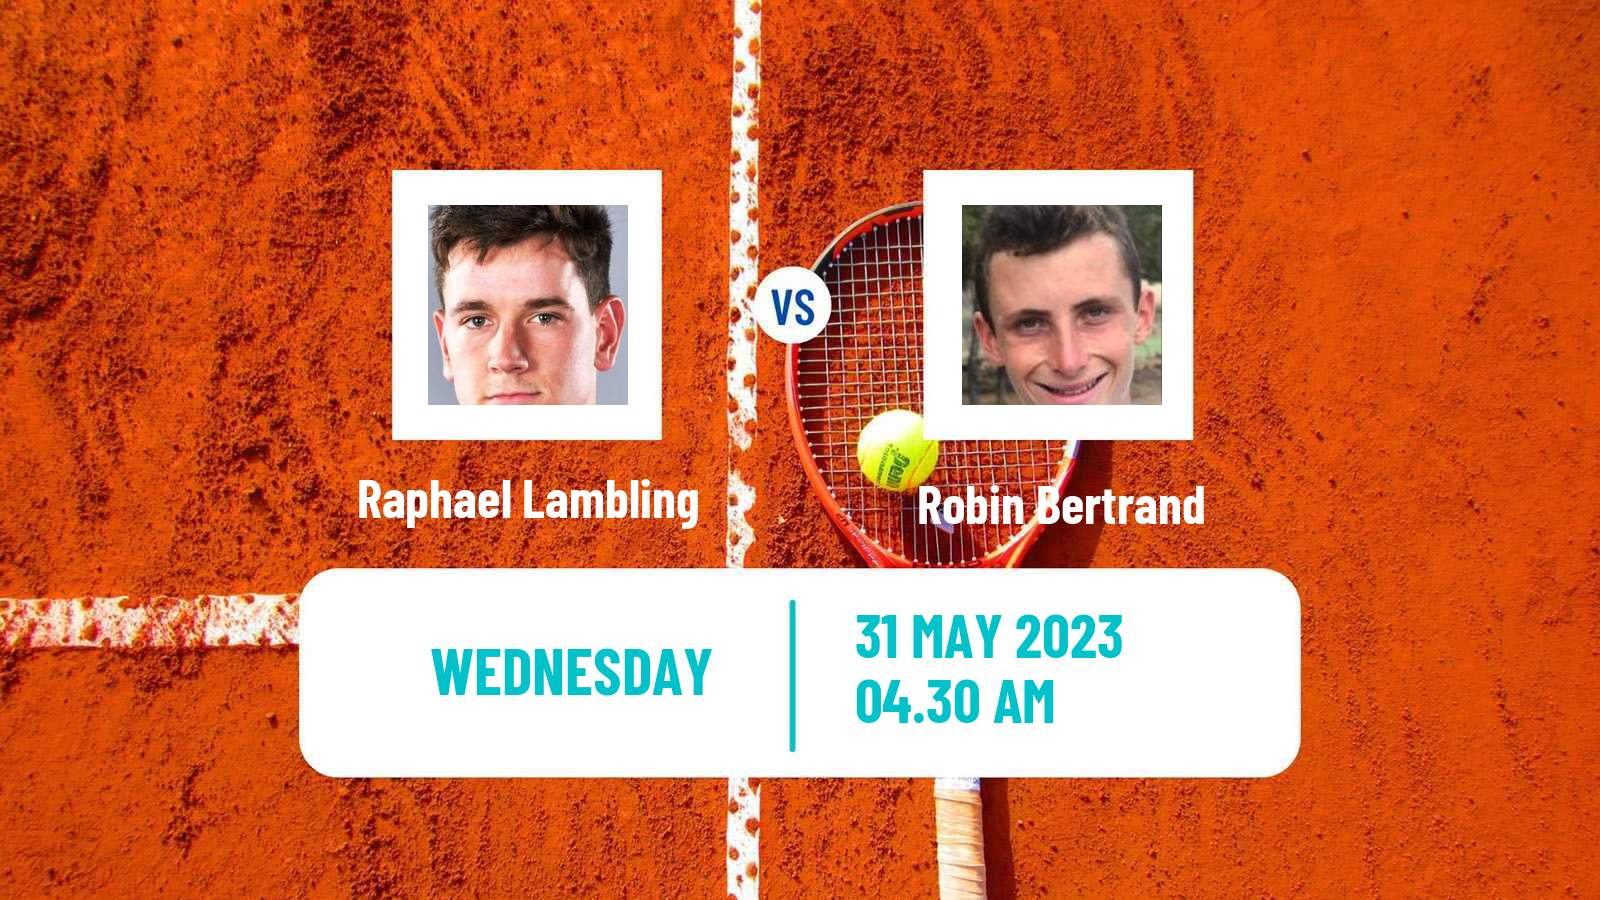 Tennis ITF M15 Monastir 22 Men Raphael Lambling - Robin Bertrand